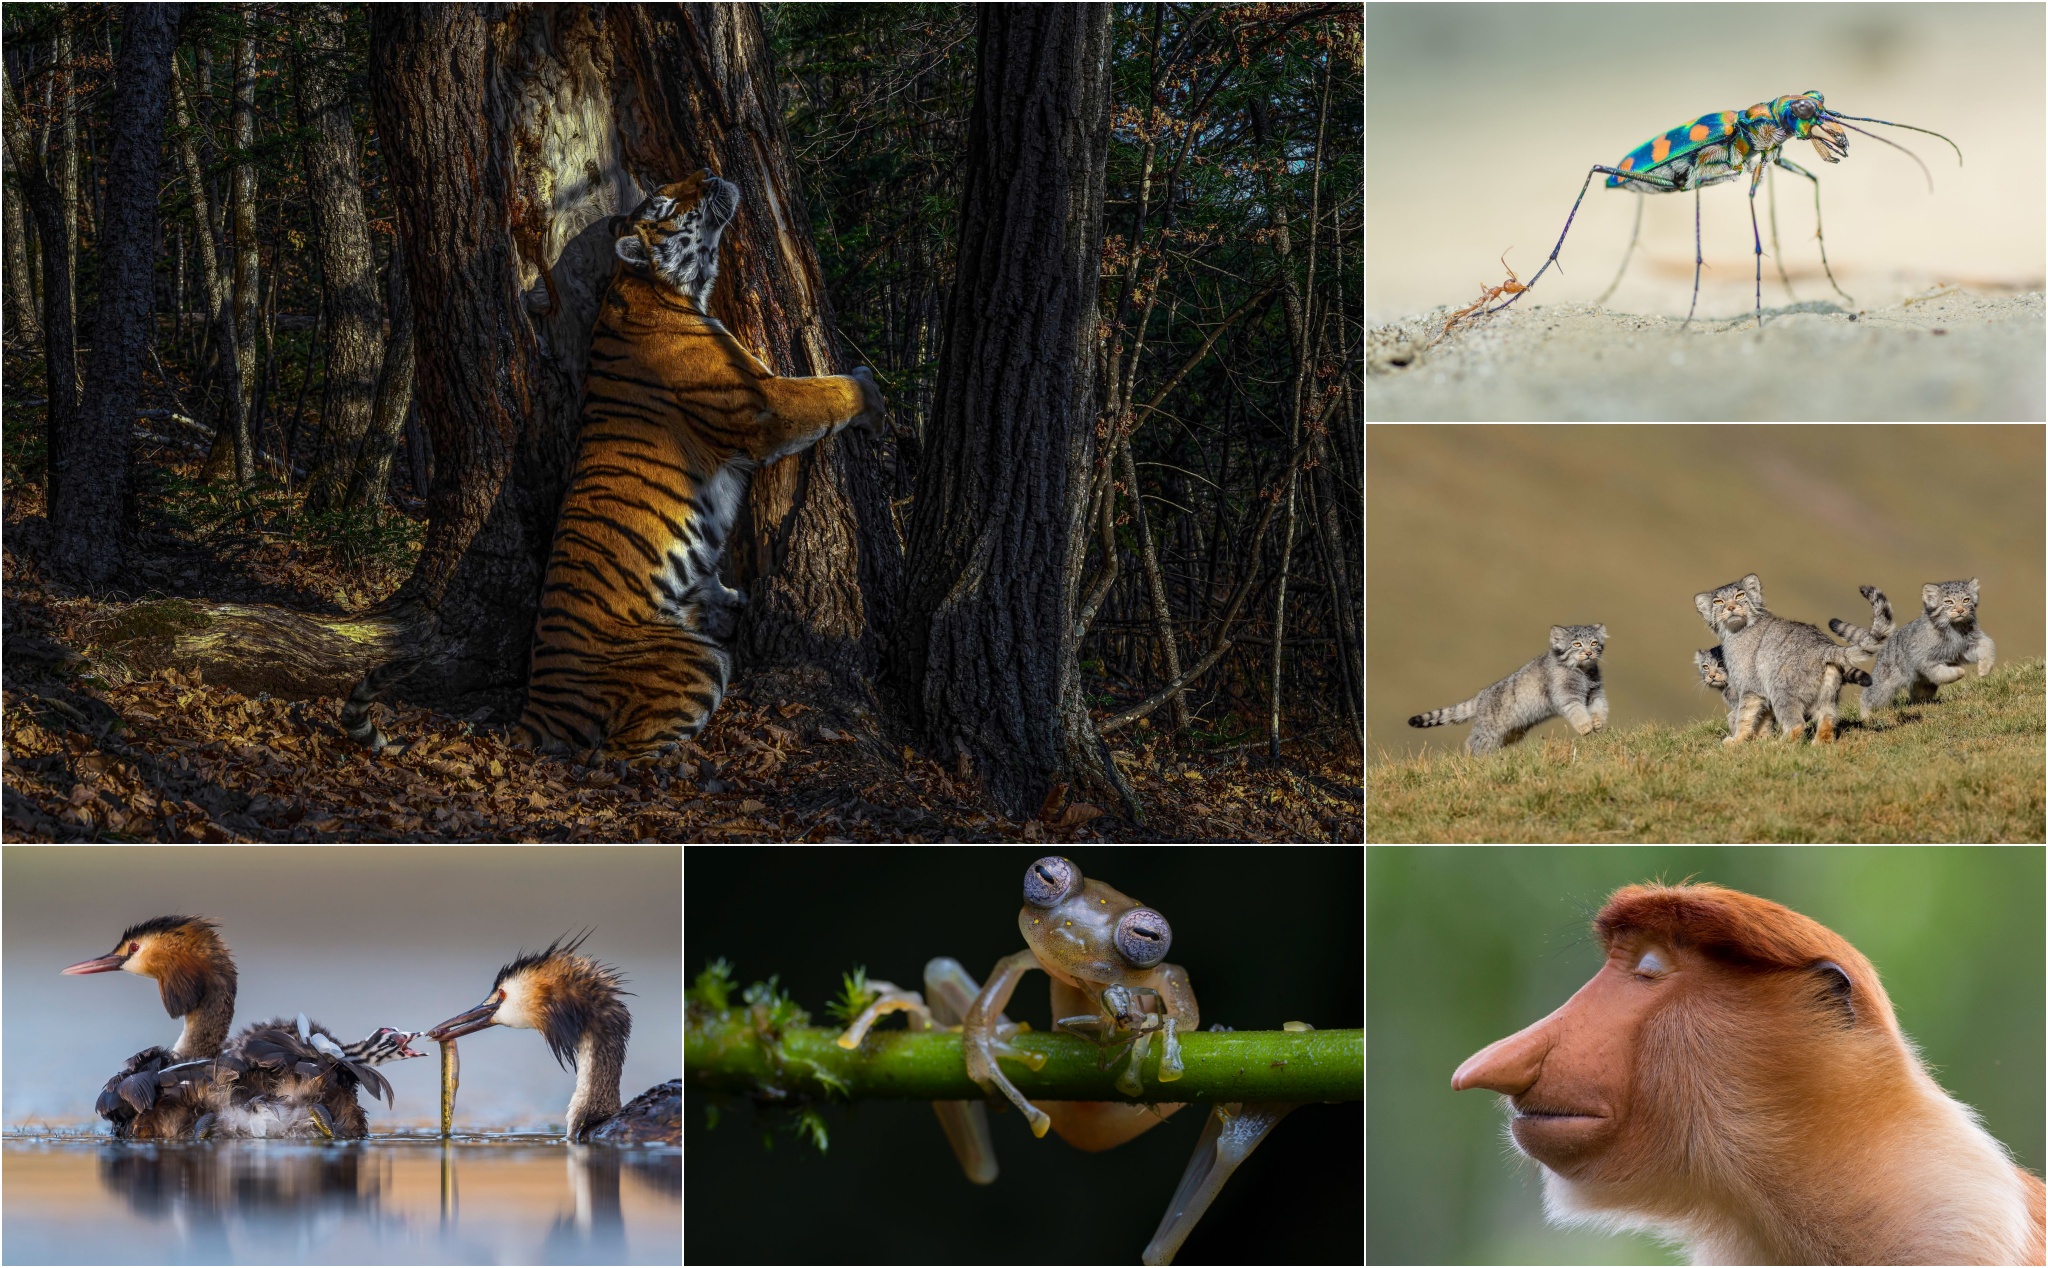 Chủ đề Động vật hoang dã trong cuộc thi nhiếp ảnh của năm 2020 đã thu hút rất nhiều tài năng nhiếp ảnh gia với những tác phẩm đẹp và ấn tượng về loài vật. Hãy cùng chiêm ngưỡng những bức ảnh ấn tượng về thế giới động vật hoang dã này để cảm nhận sức sống thật sự của những sinh vật này.